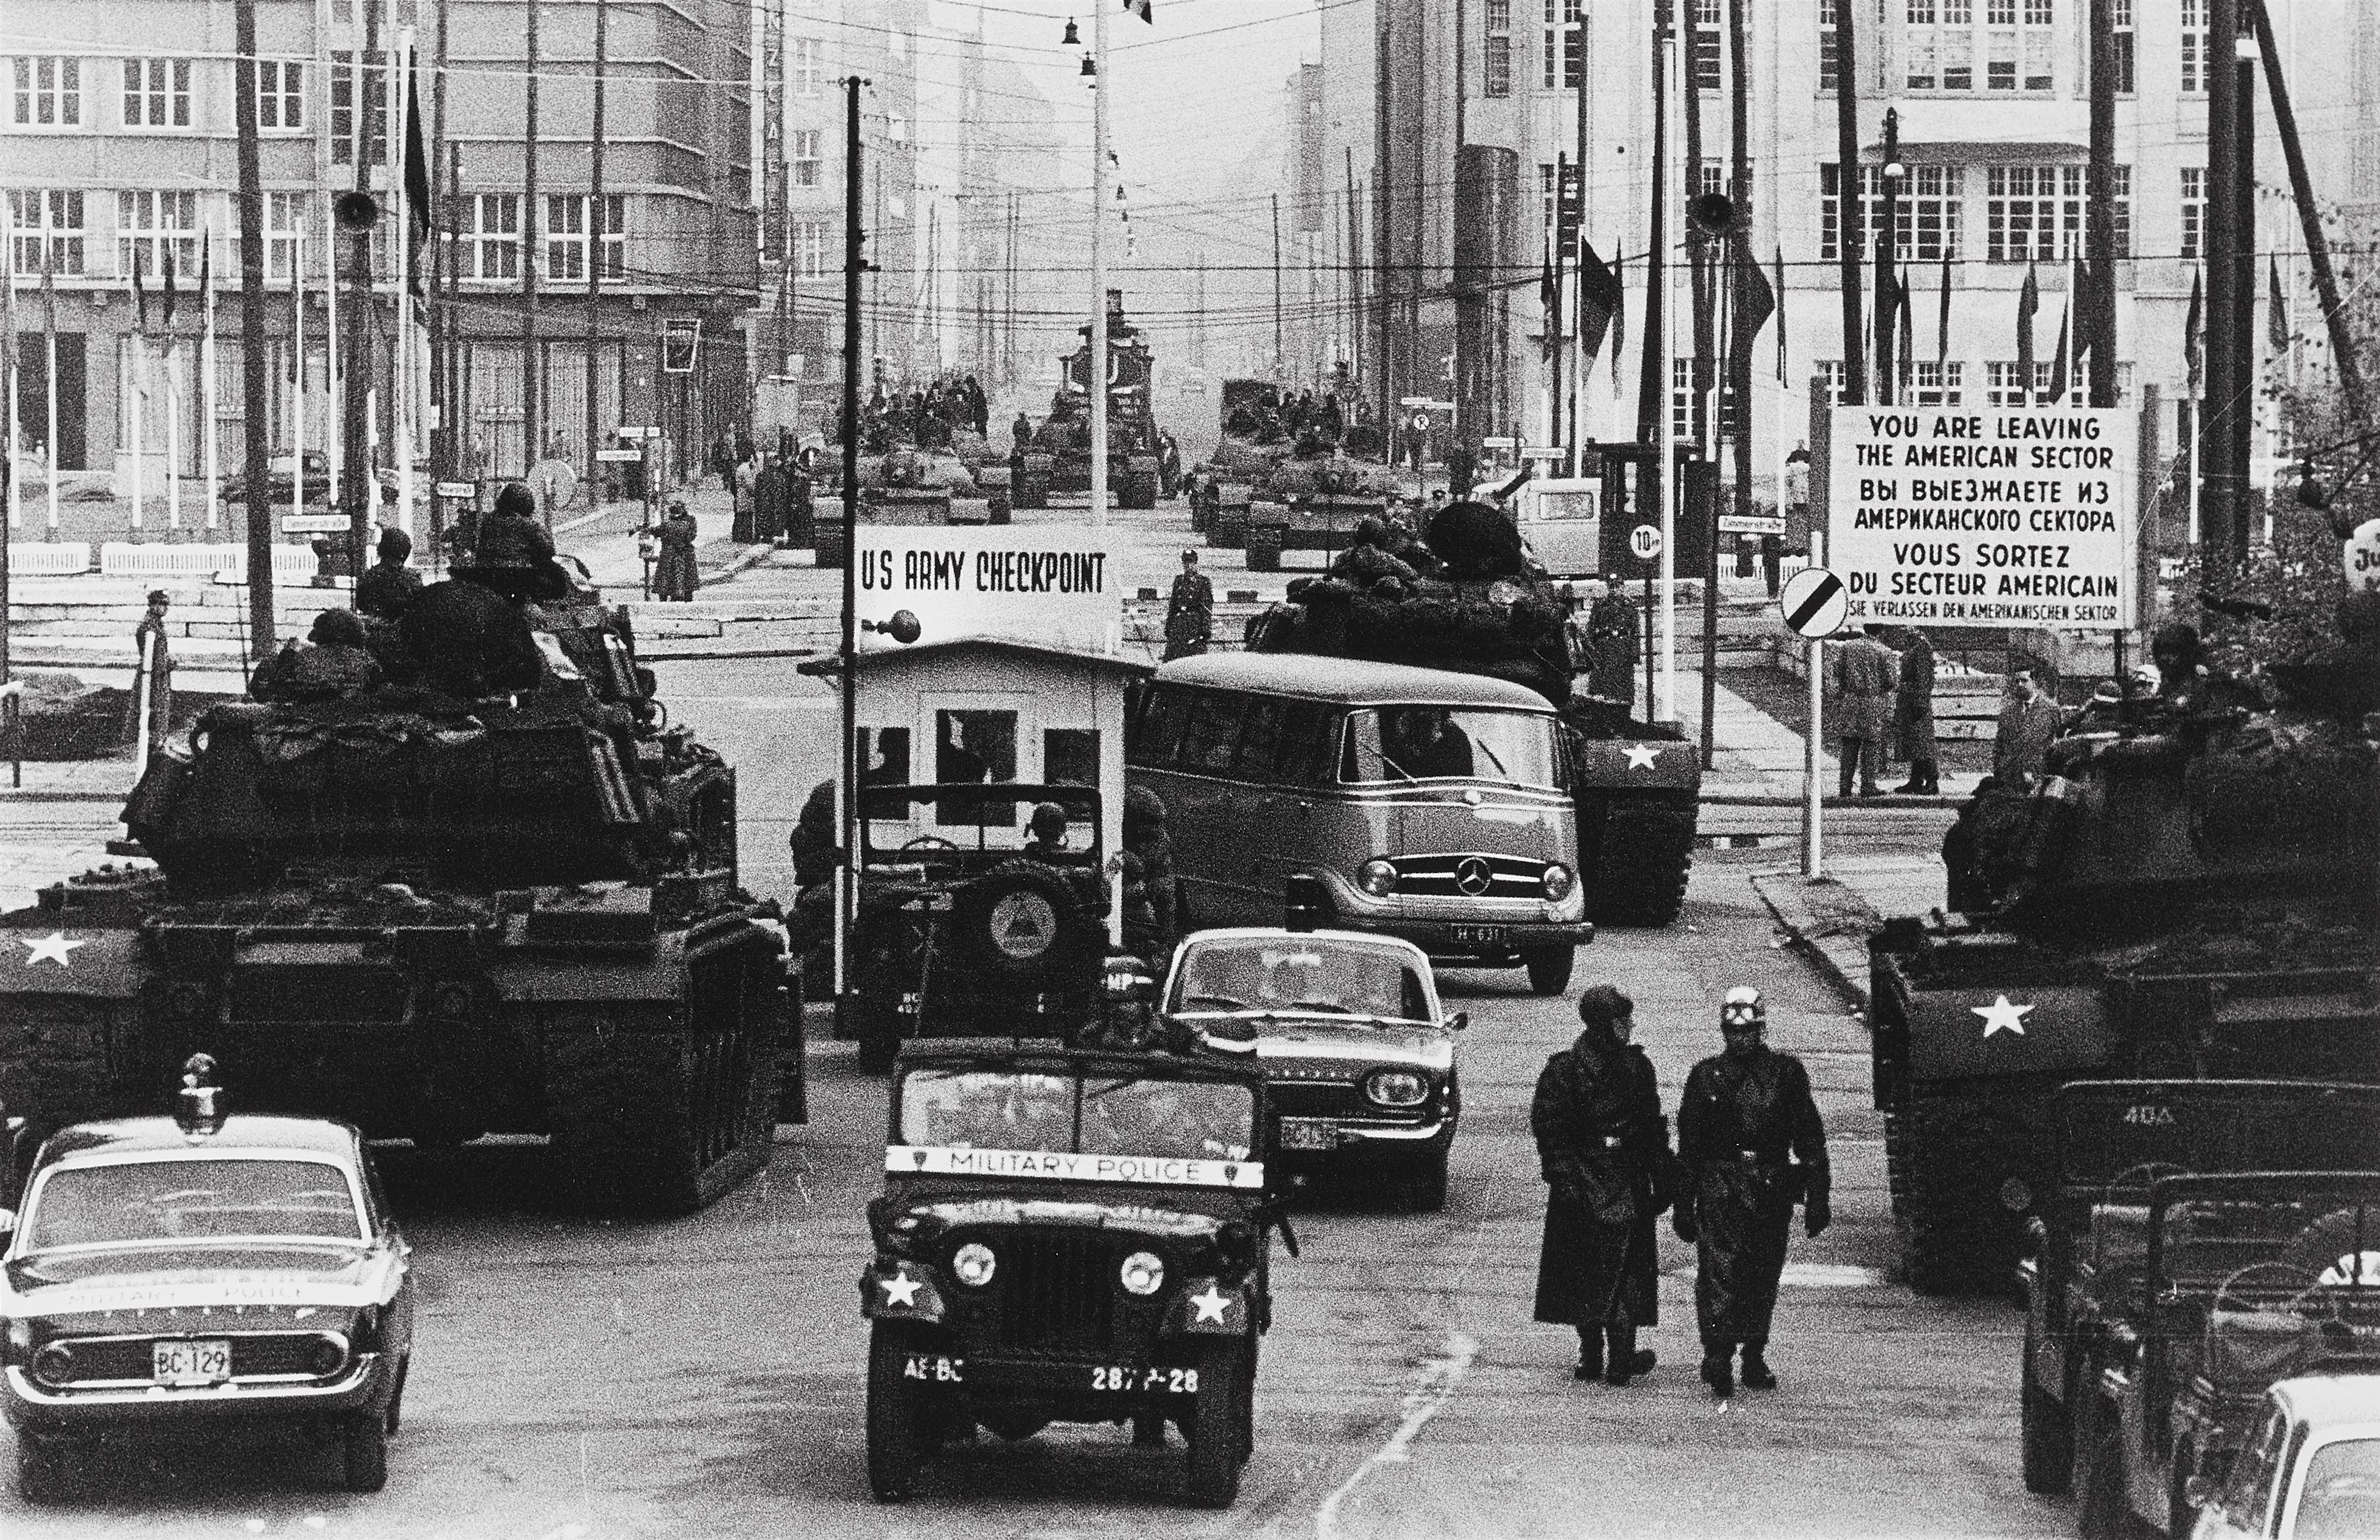 Will McBride - Russische und amerikanische Panzer in der Friedrichstraße, Berlin - image-1